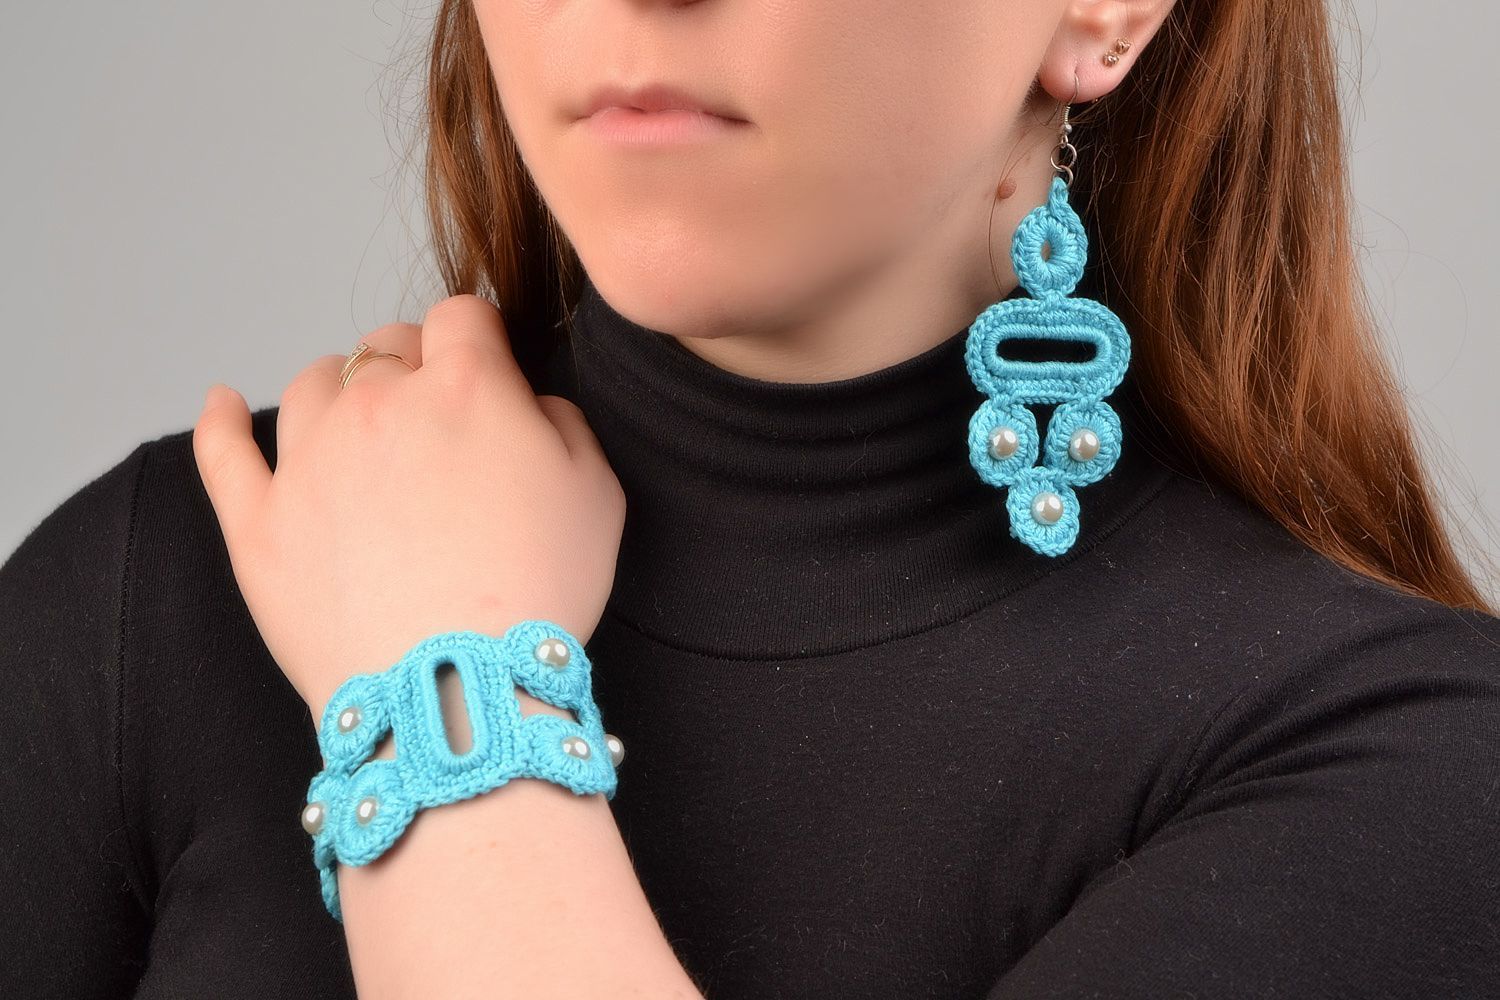 Textil Schmuckset 2 Stück Ohrringe und Armband aus Fäden geflochten in Blau handmade foto 1